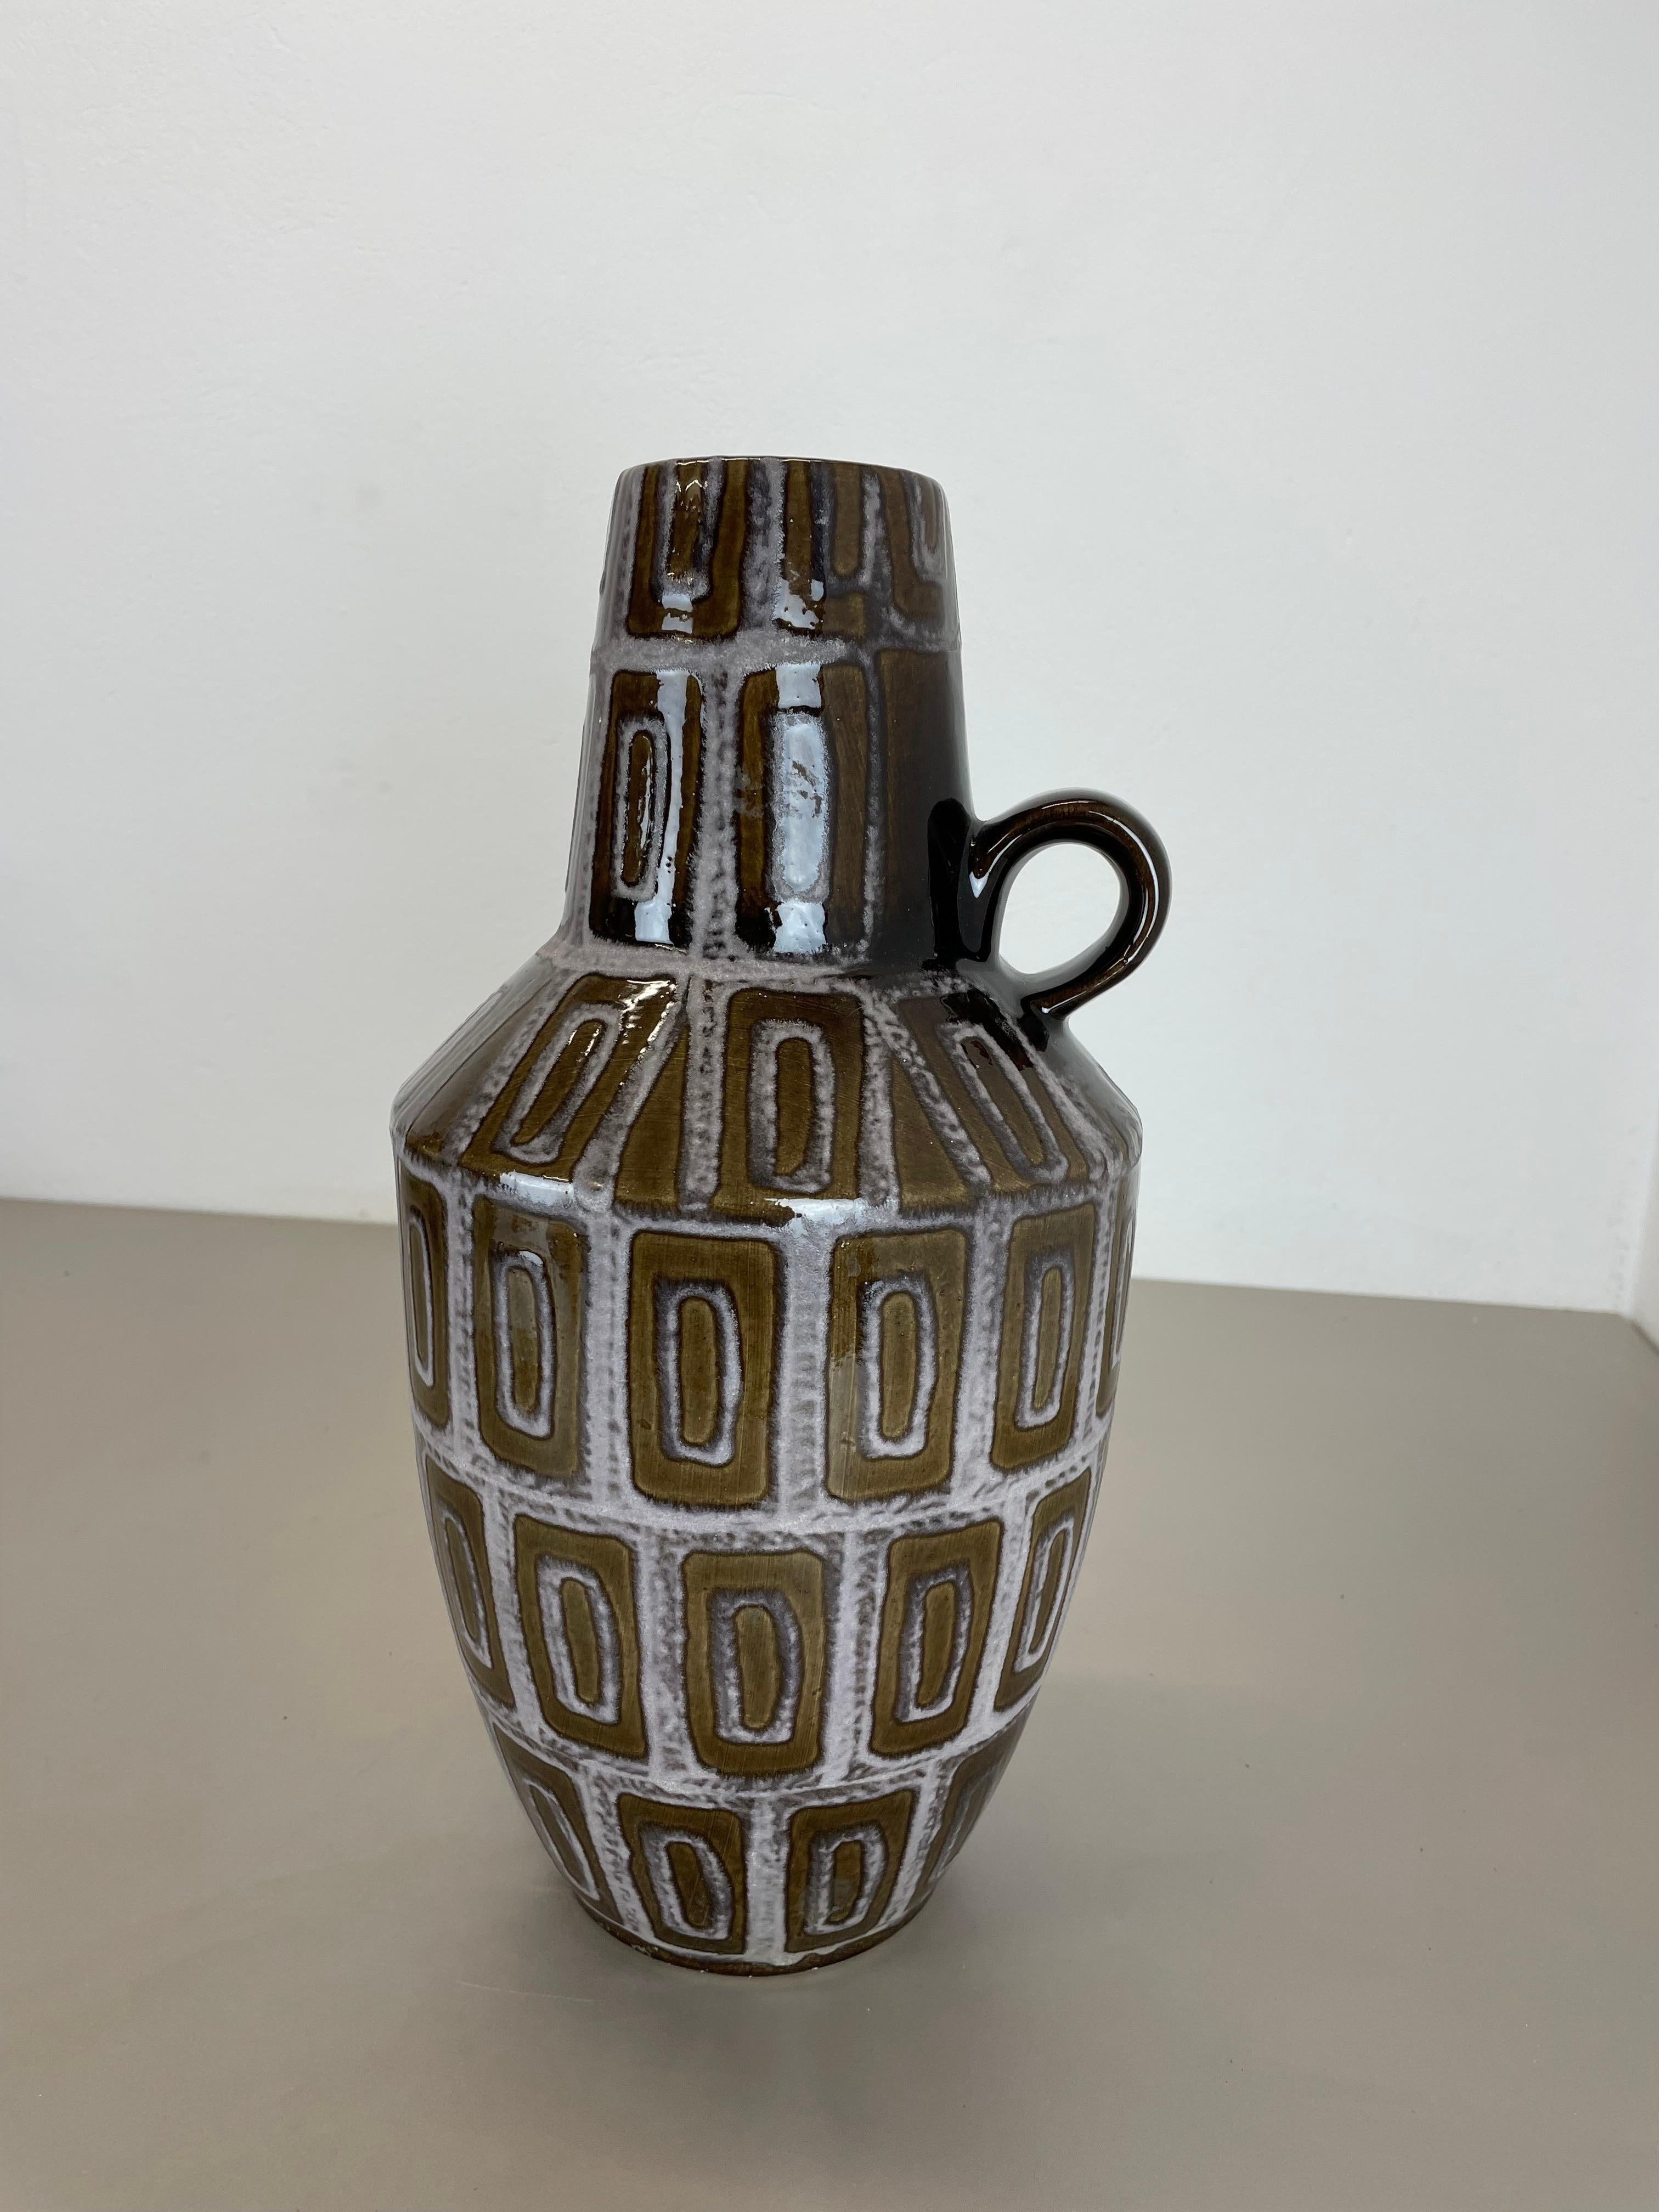 Article :

Vase d'art Fat lava version extra large


Modèle : 279-38


Producteur :

Scheurich, Allemagne



Décennie :

1970s


Description :

Ce vase vintage original a été produit dans les années 1970 en Allemagne. Il est réalisé en poterie